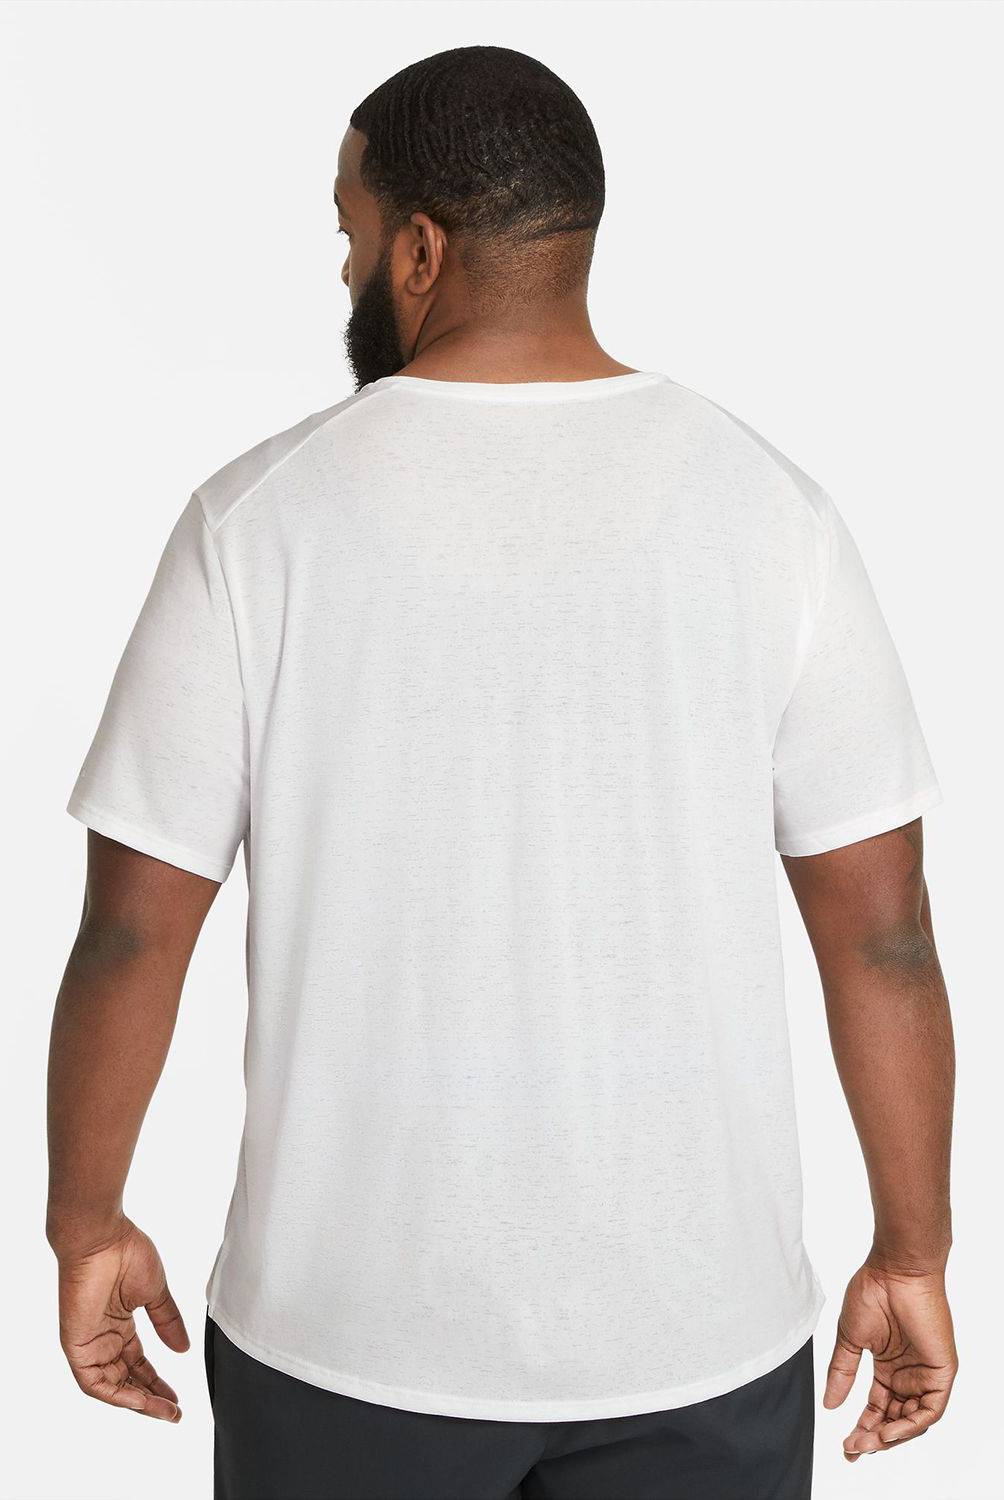 NIKE - Camiseta Nike Hombre